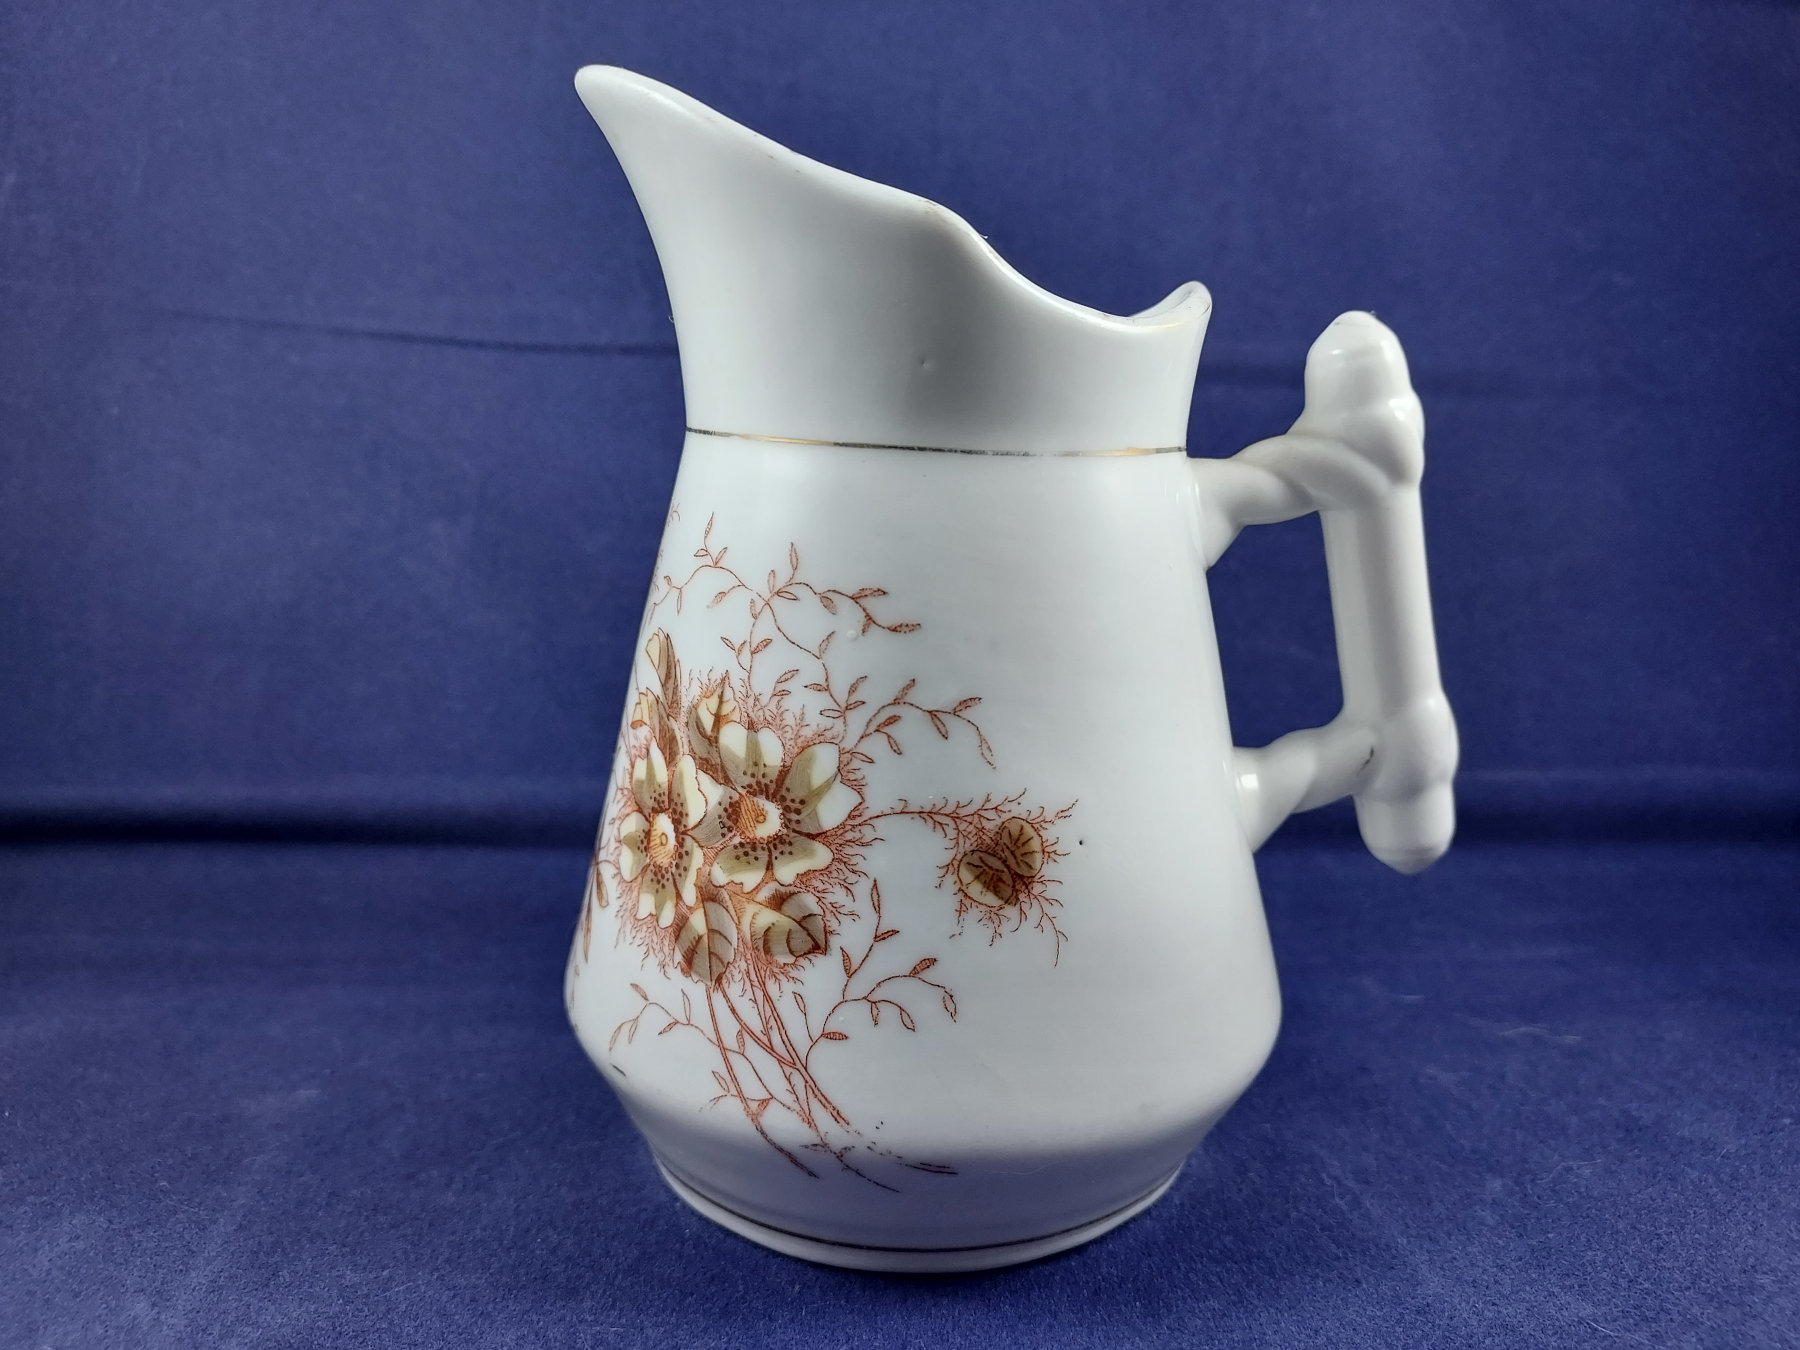 Freiwaldau milk jug with brown flowers and leaves